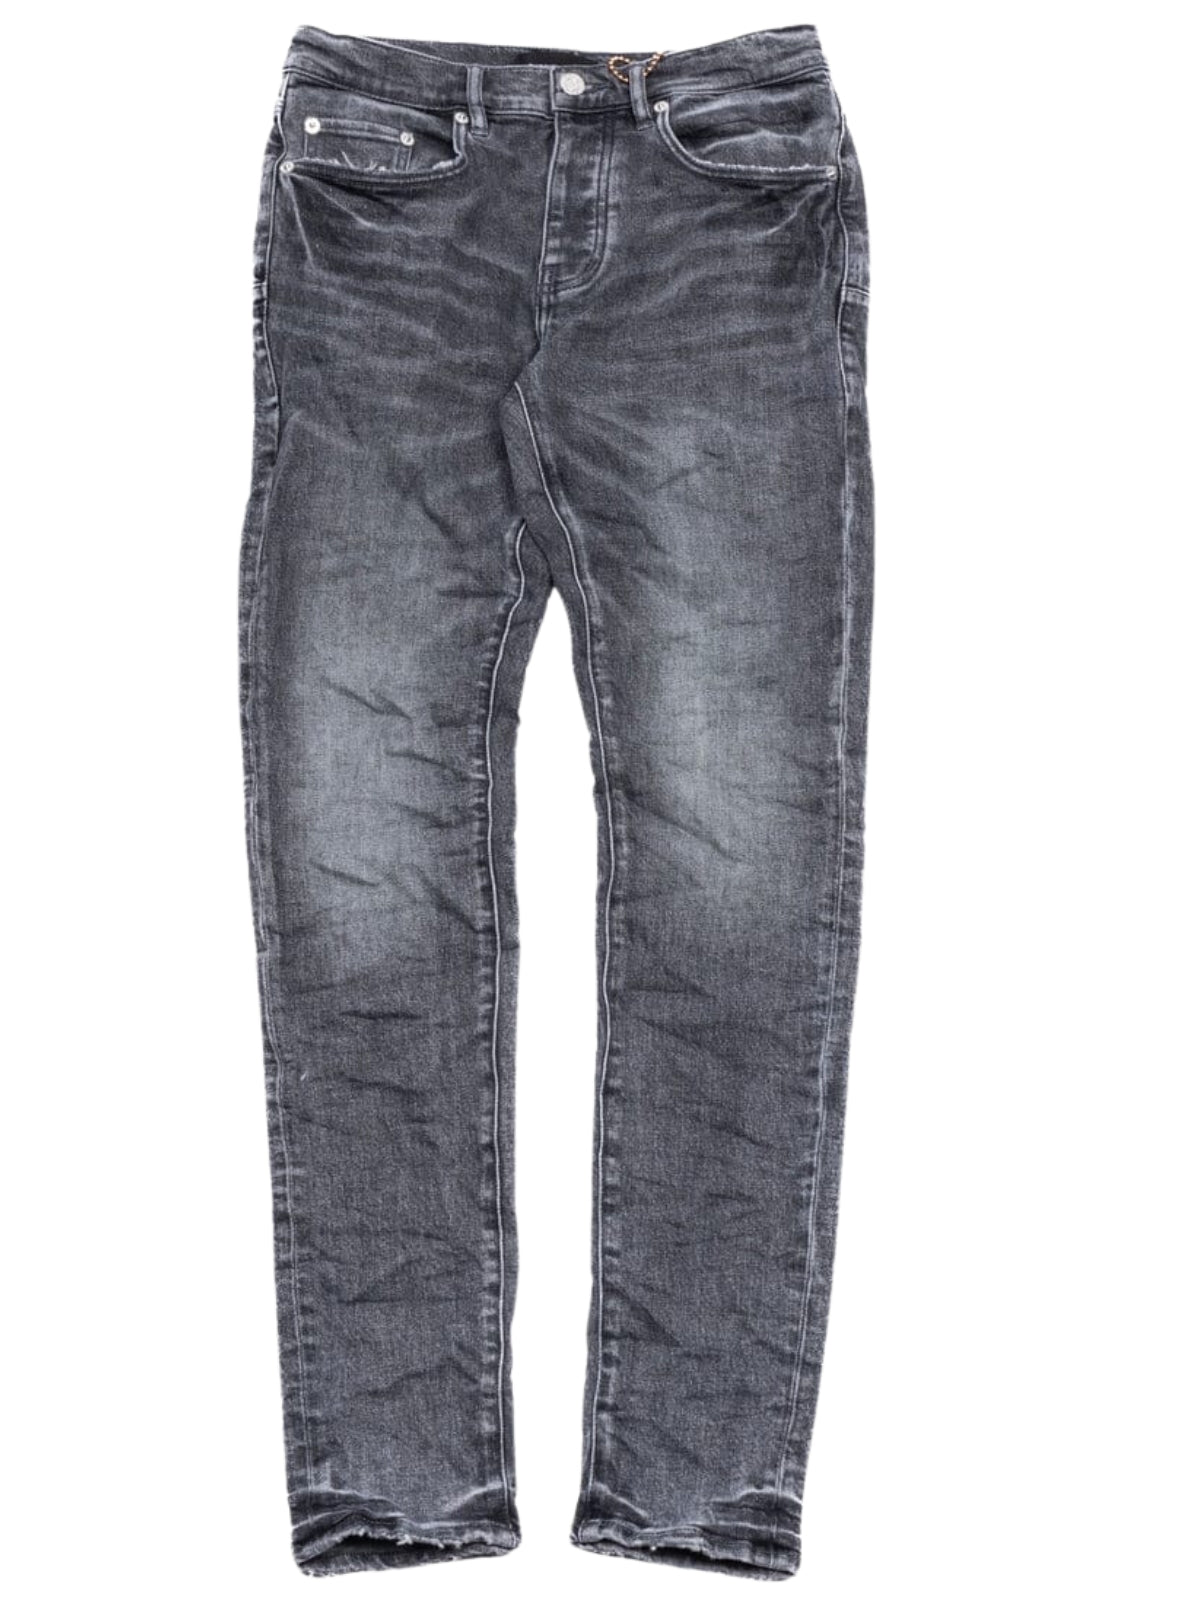 Purple Jeans Vintage Slate Grey